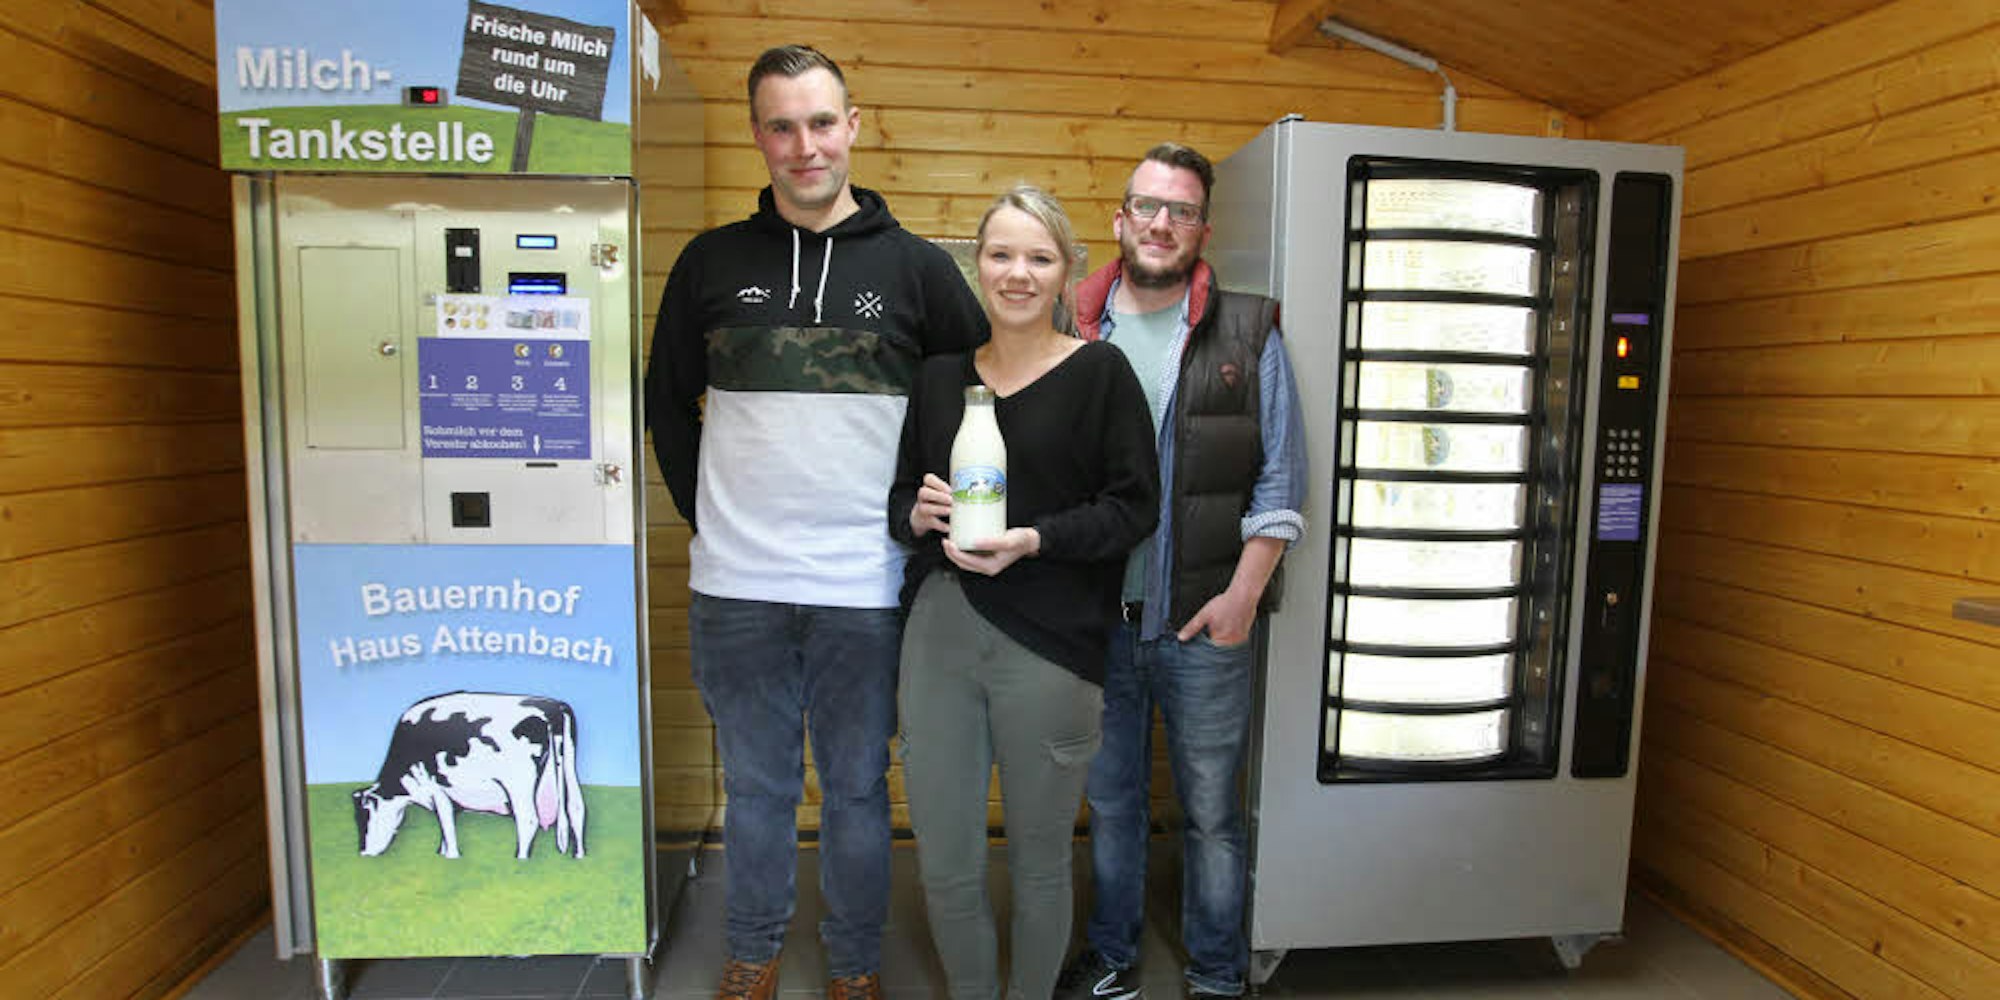 Christian Becker, Lena Alda und Sebastian Jungen (von links) haben die Milch-Tankstelle bei Haus Attenbach in Hennef aufgebaut.